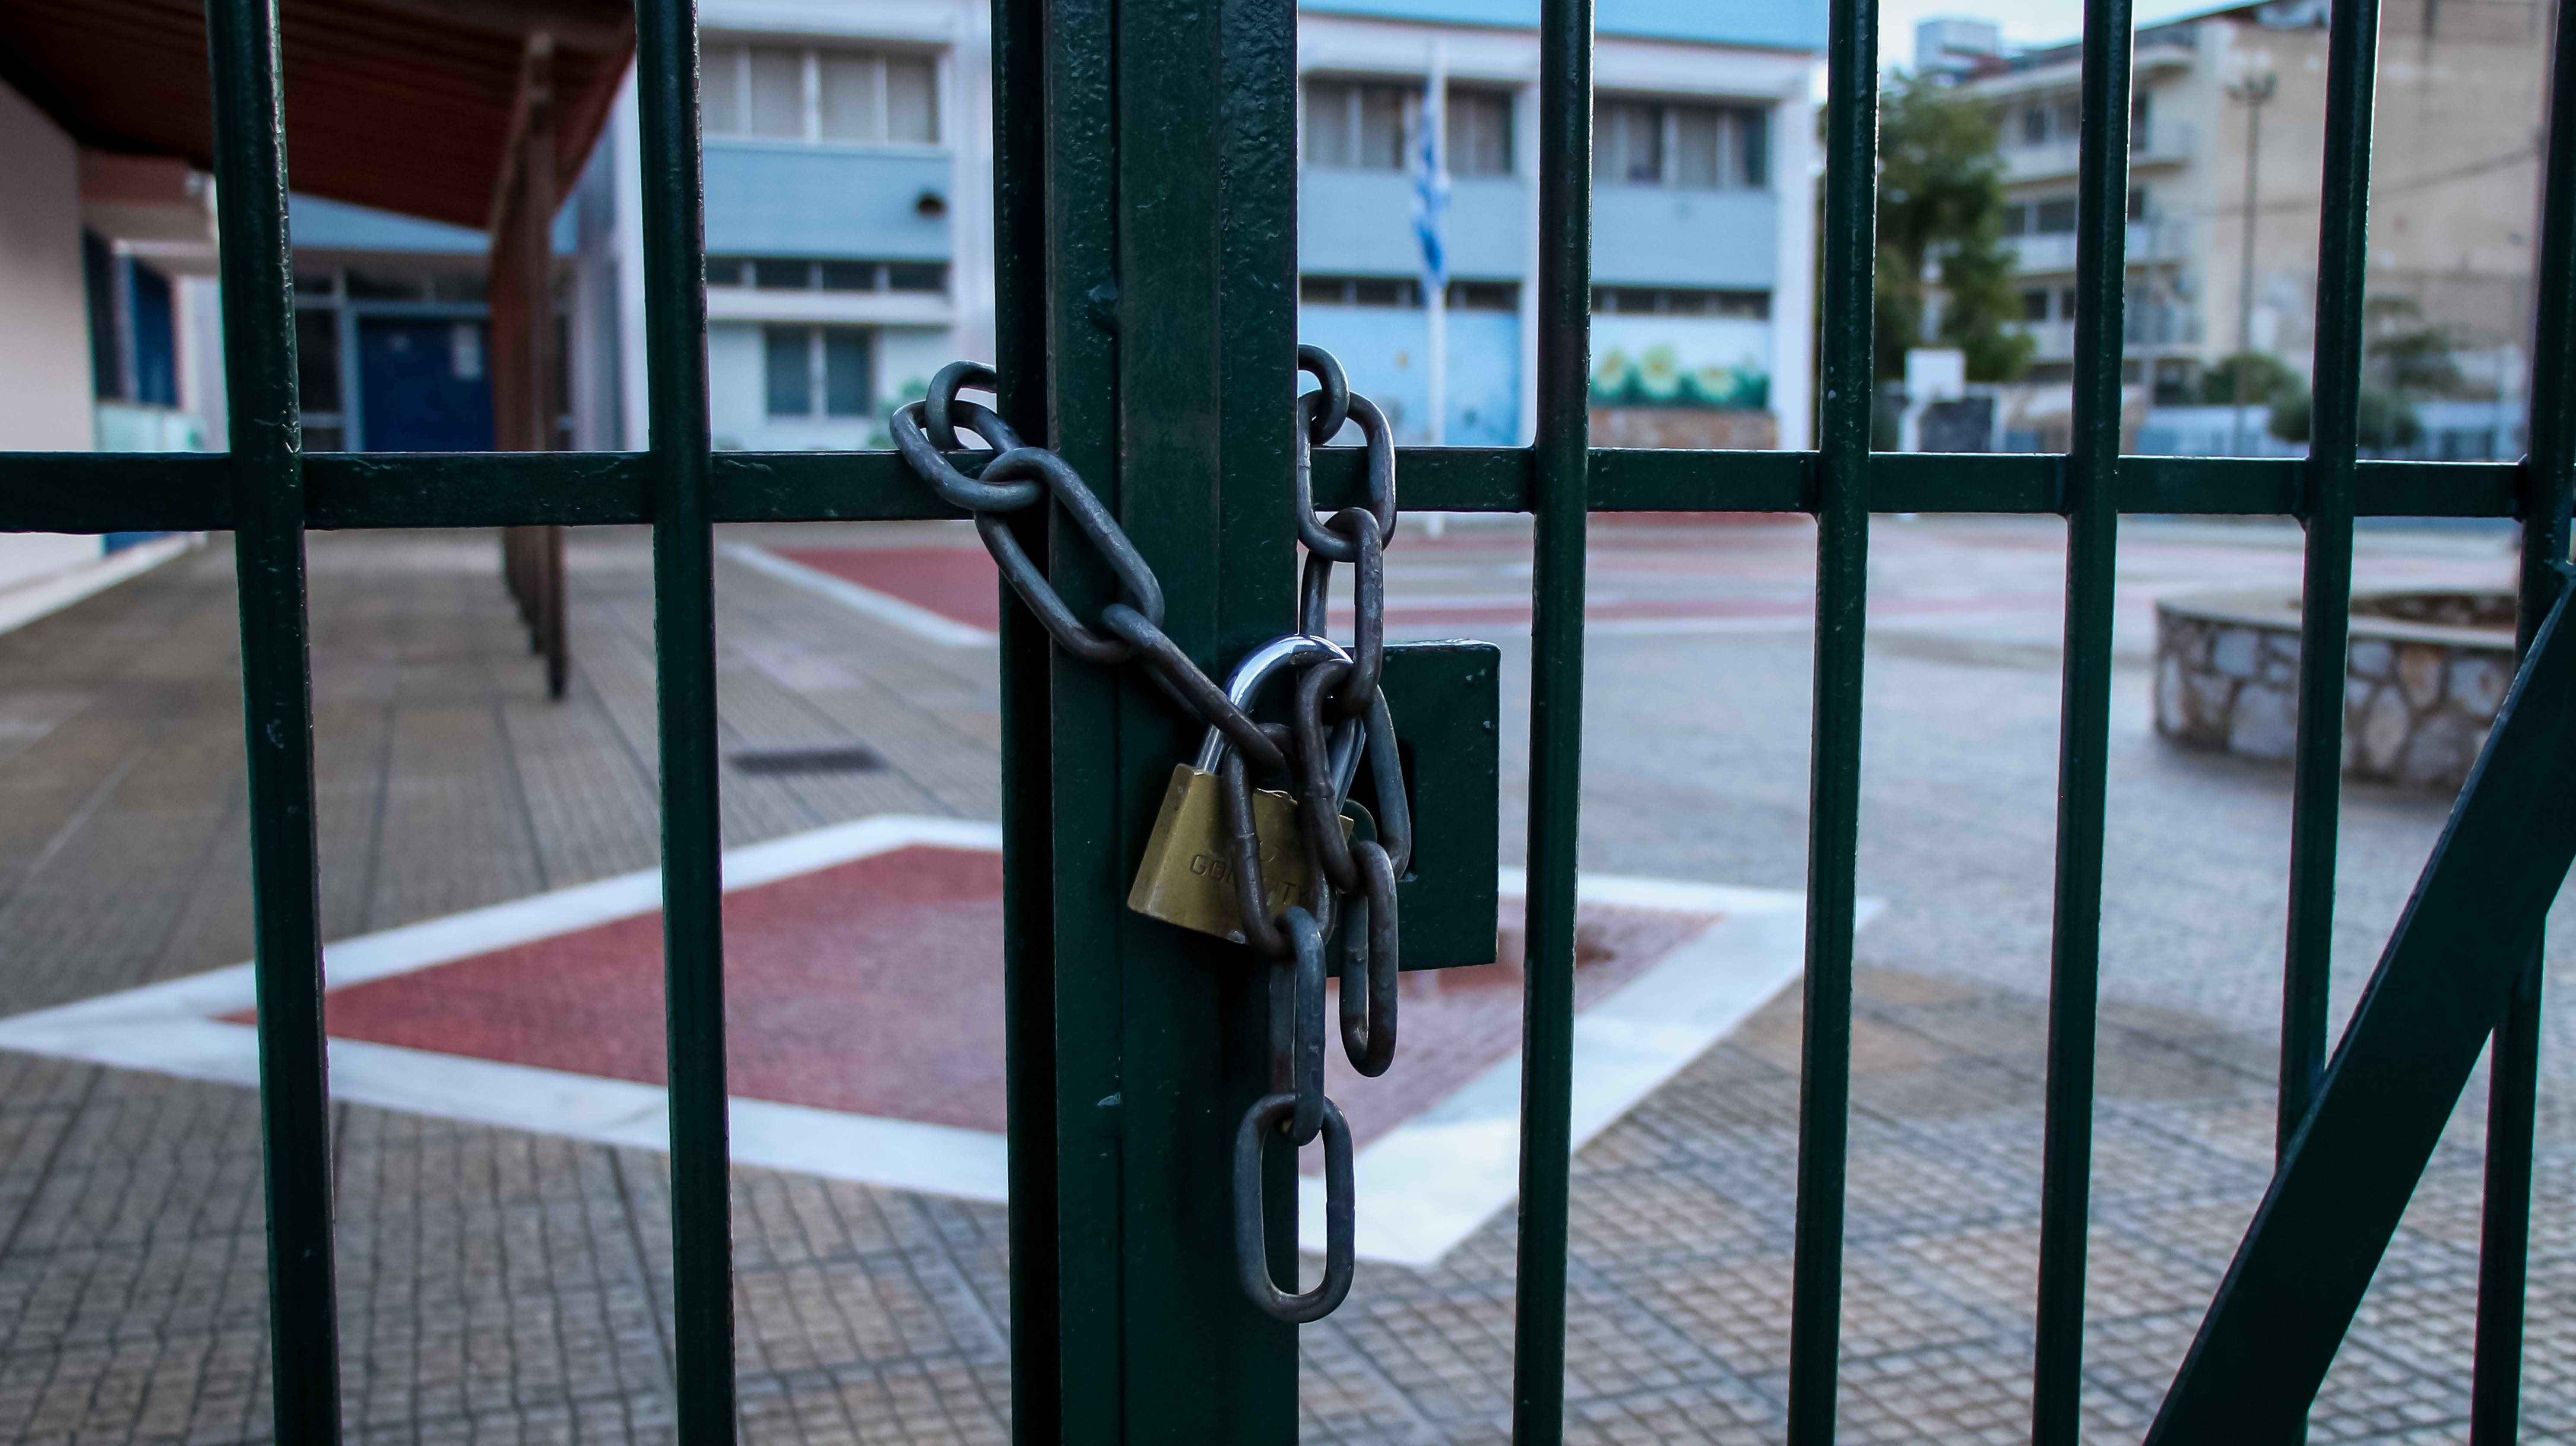 Ν.Καπραβέλος: «Να παραταθεί το άνοιγμα των σχολείων – Στο τραπέζι και το lockdown»